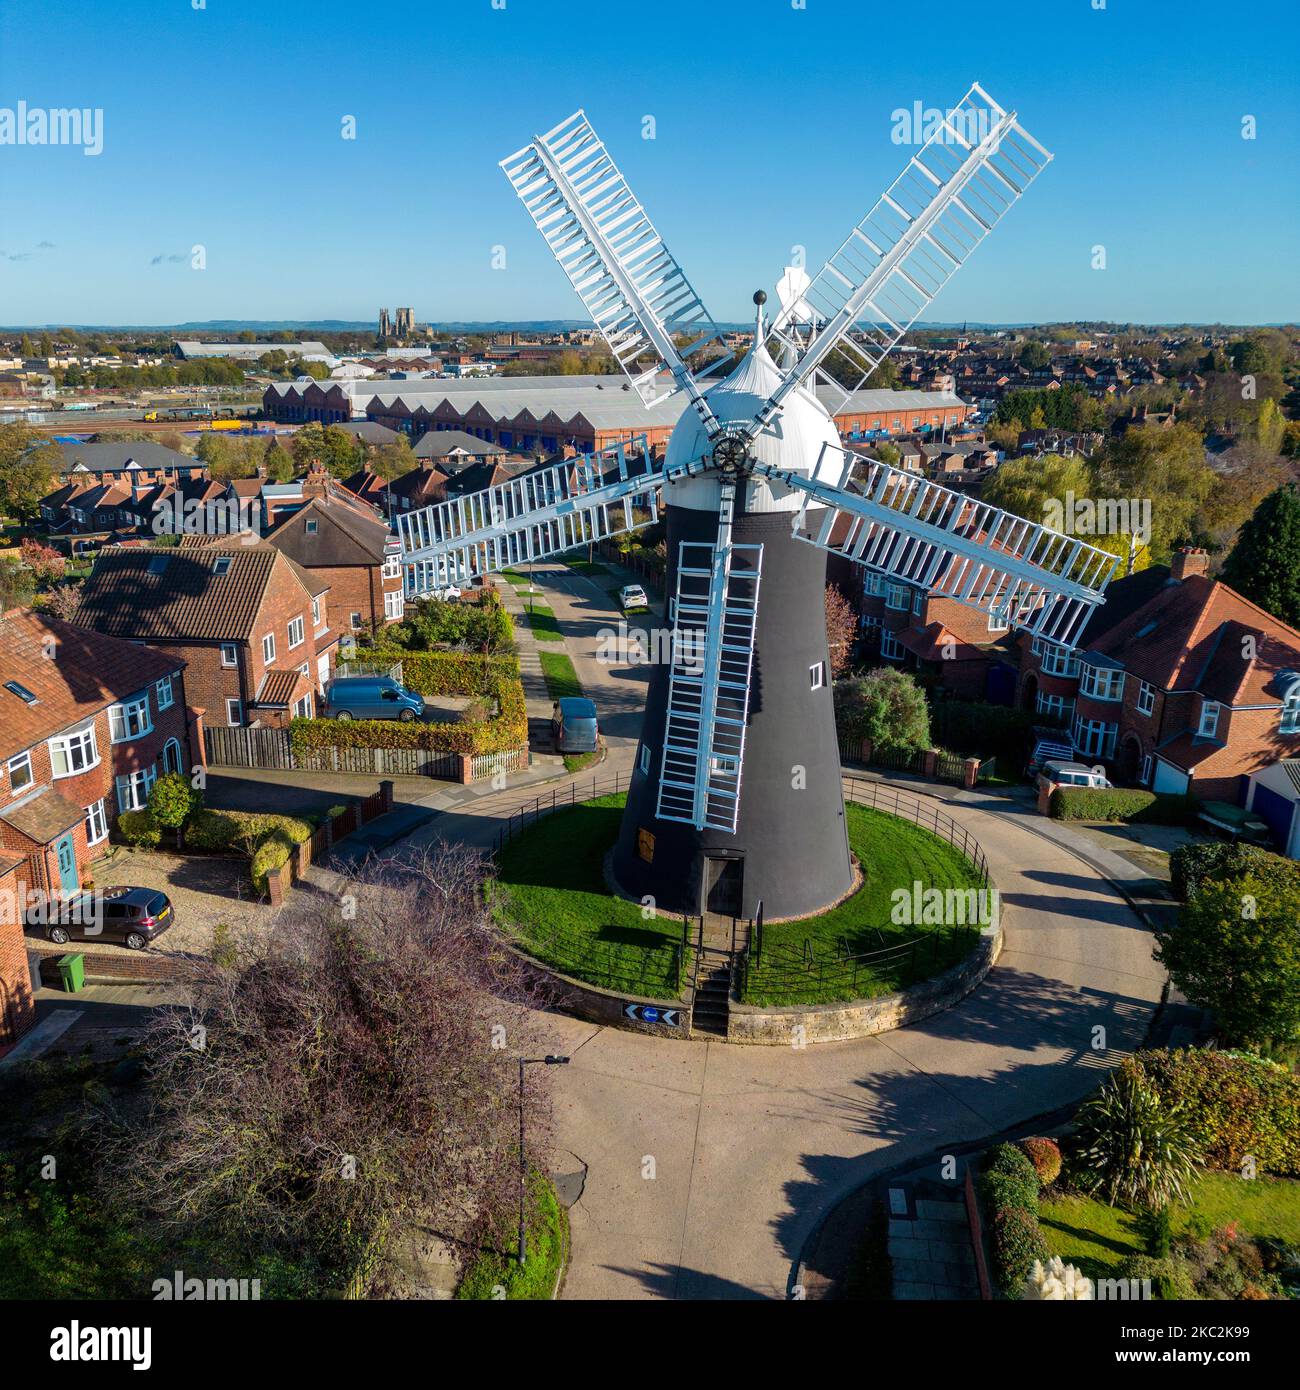 Holgate Windmill dans la ville de York au Royaume-Uni. Construit en 1770. Après la restauration, l'usine est maintenant en état de fonctionnement complet. York Minster Banque D'Images